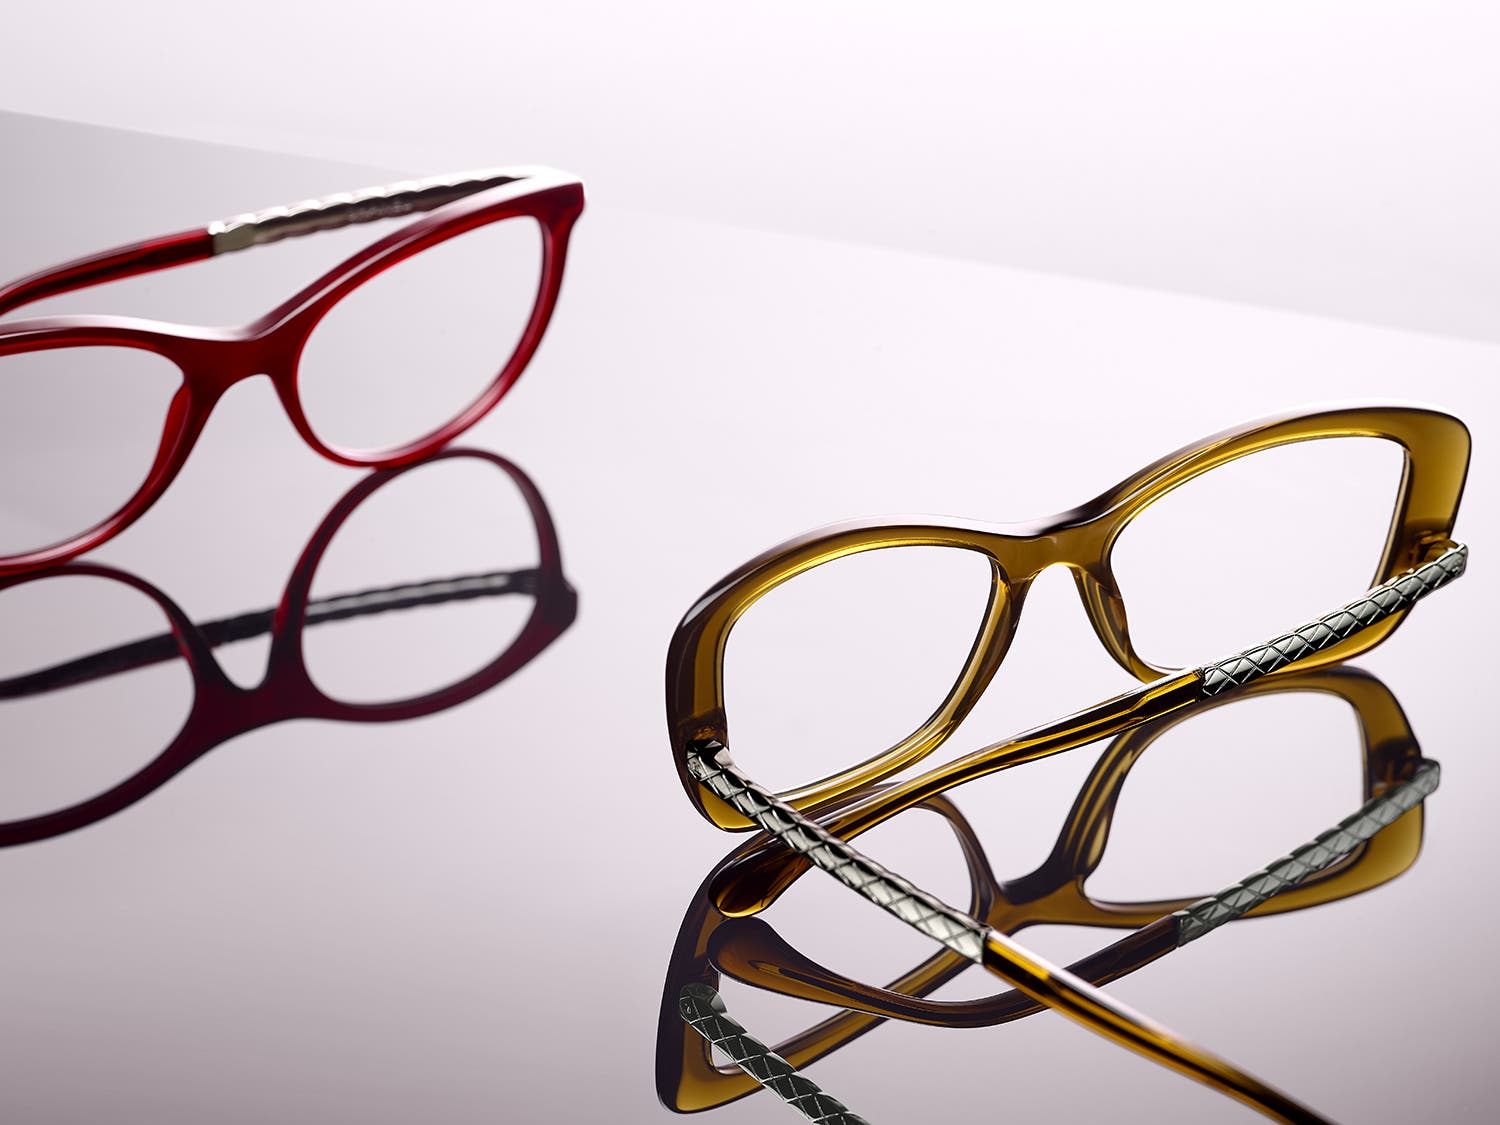 اختاري تصميمك المفضّل من نظارات "شانيل" الجديدة 2551fa47-5d8c-46d2-bbc5-18d67c3bcc12